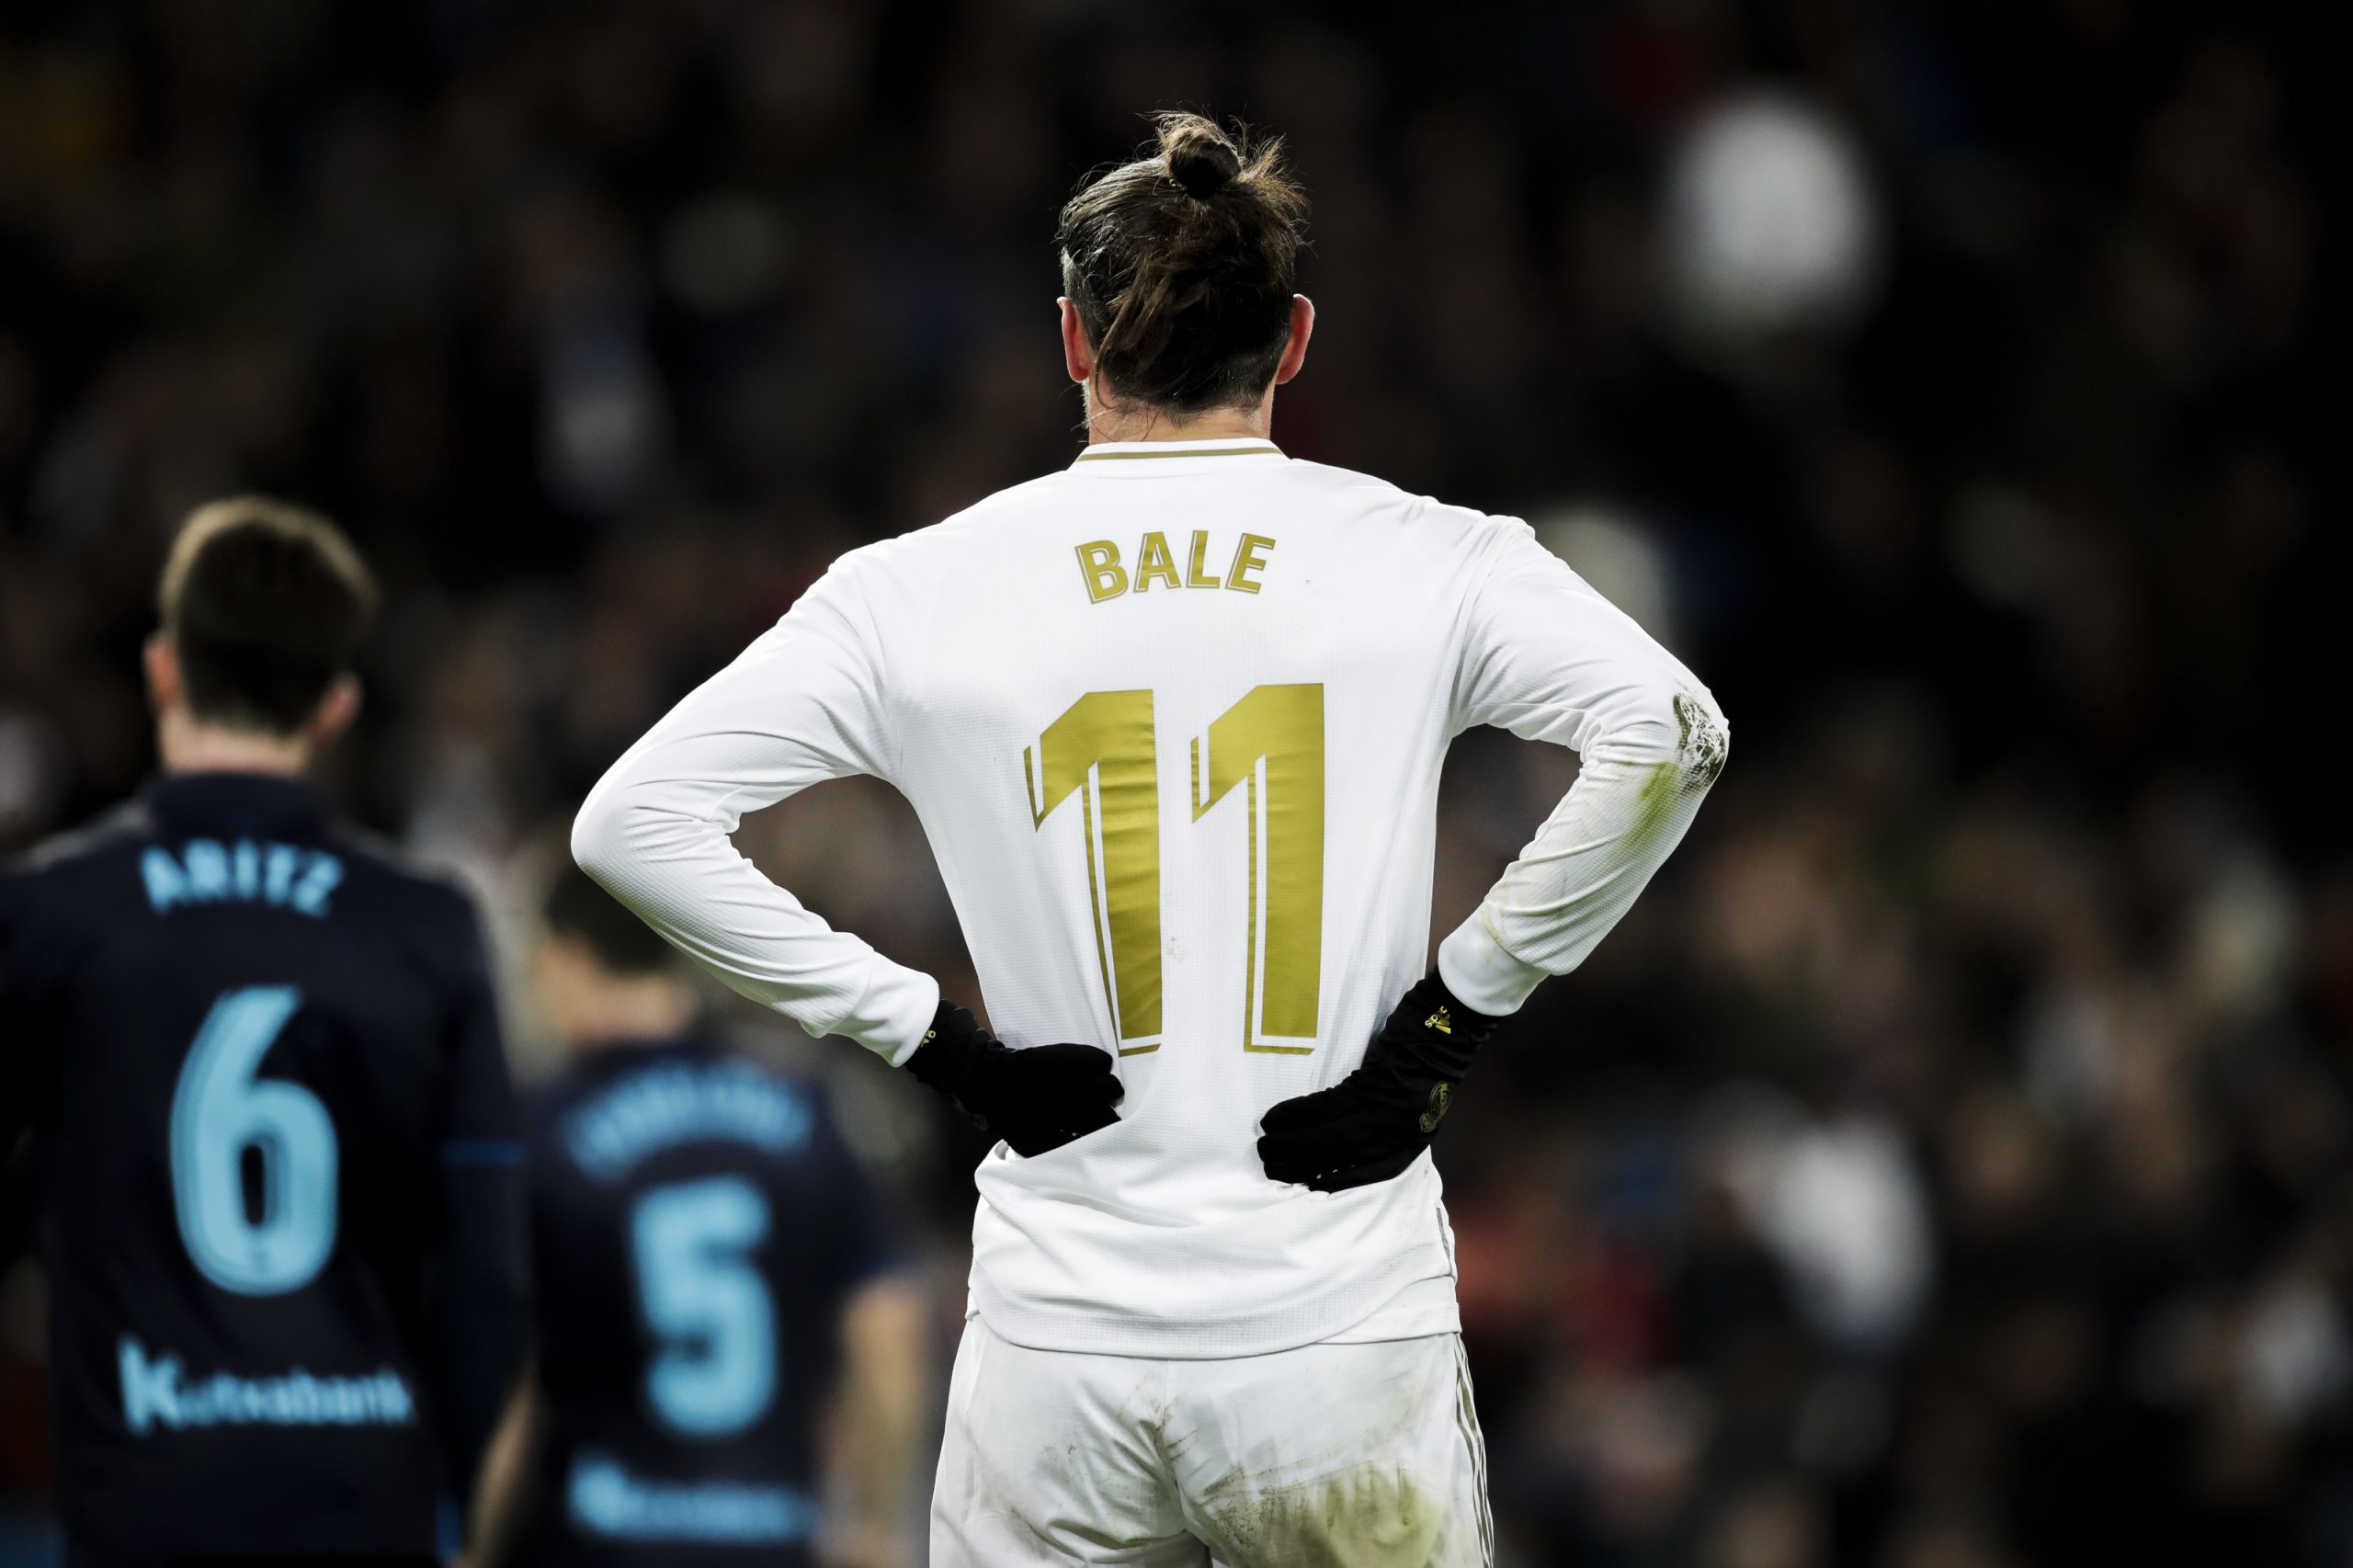 Số áo Bale